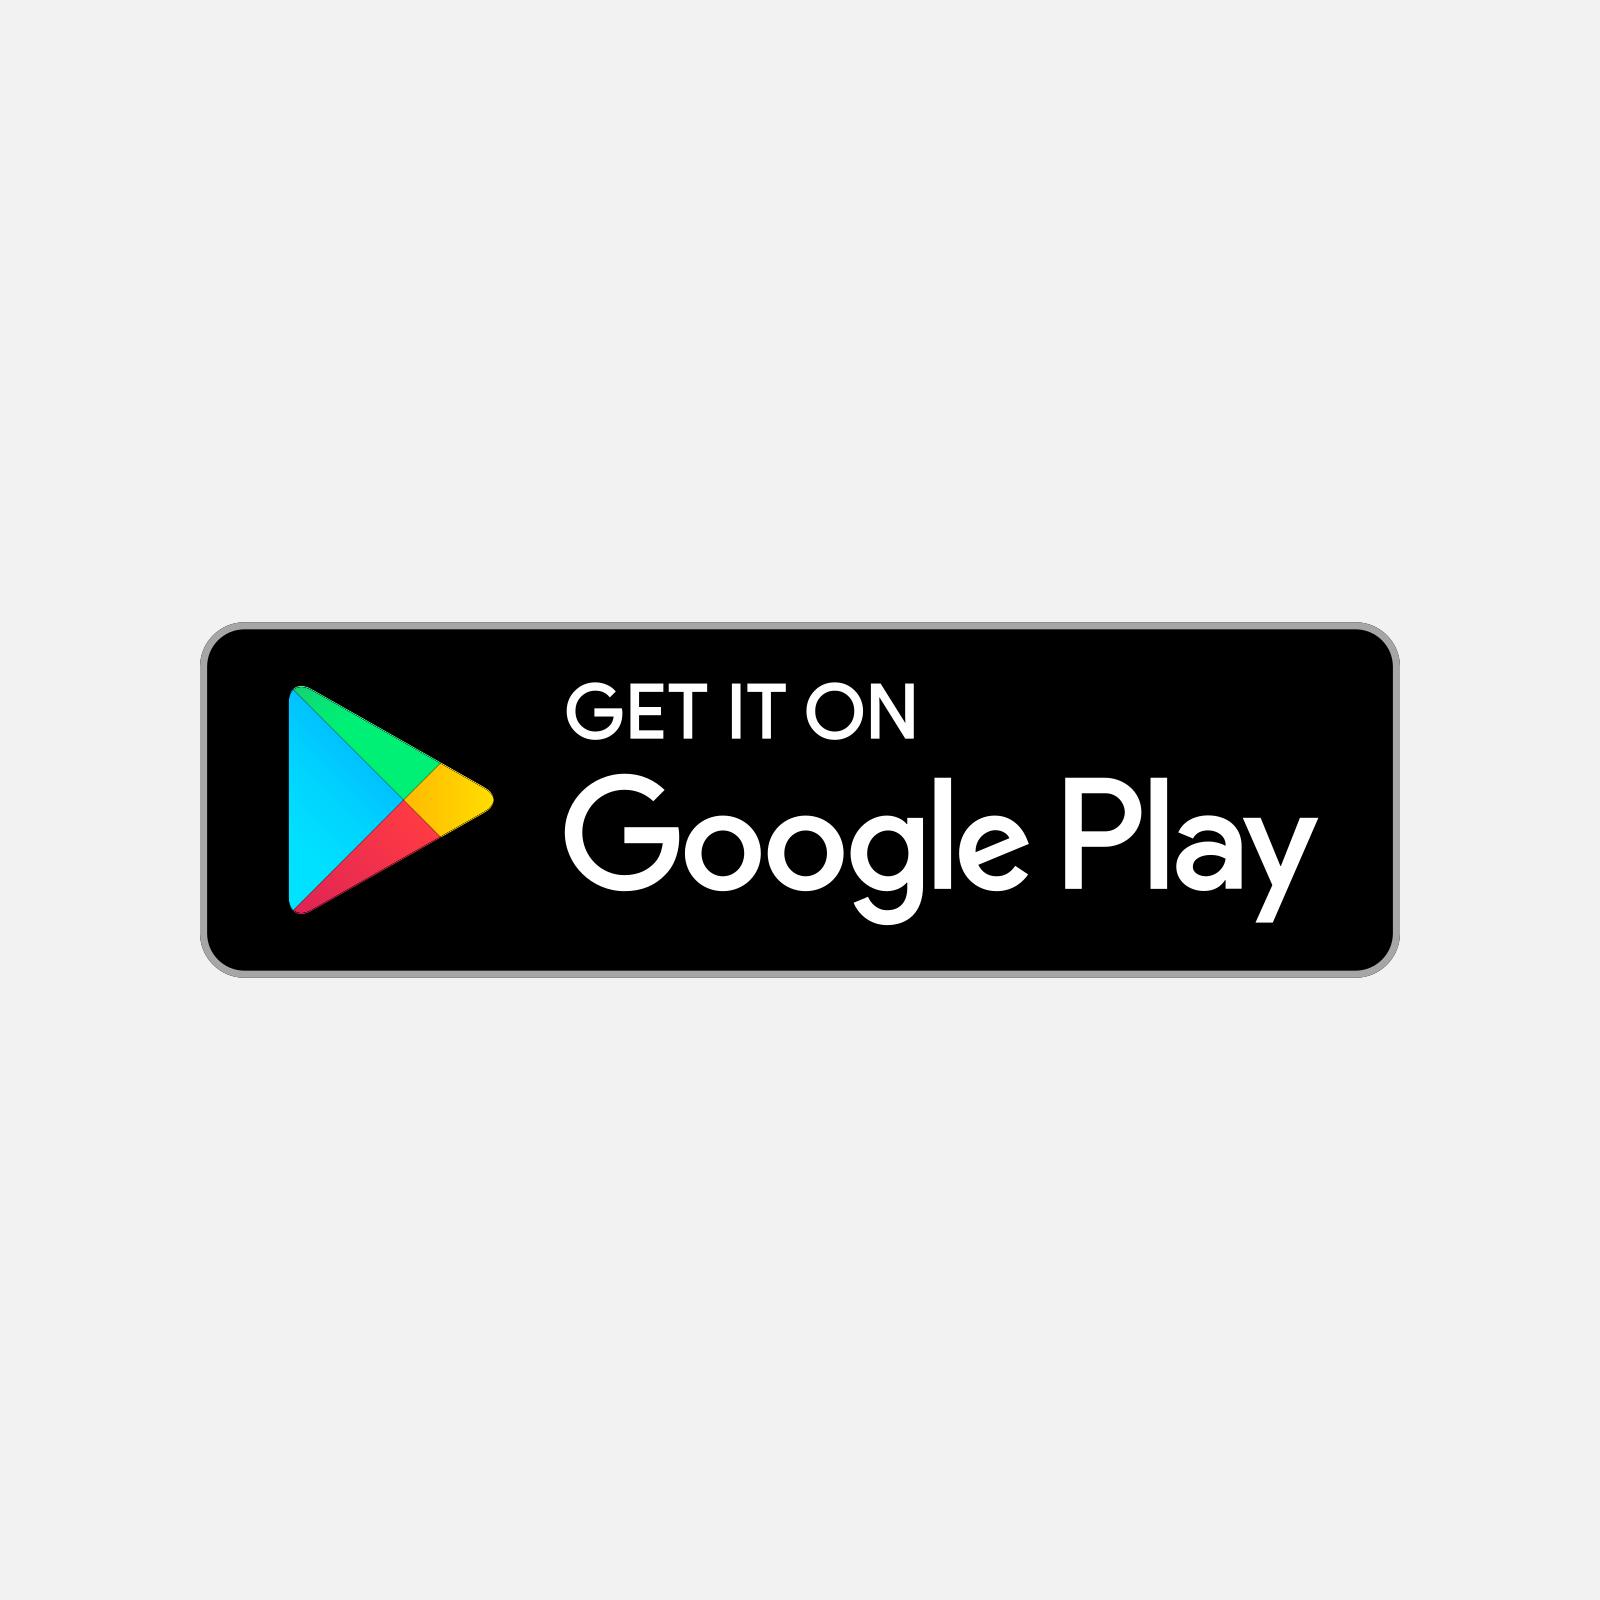 初めて Android アプリを作って Google Play で公開しました